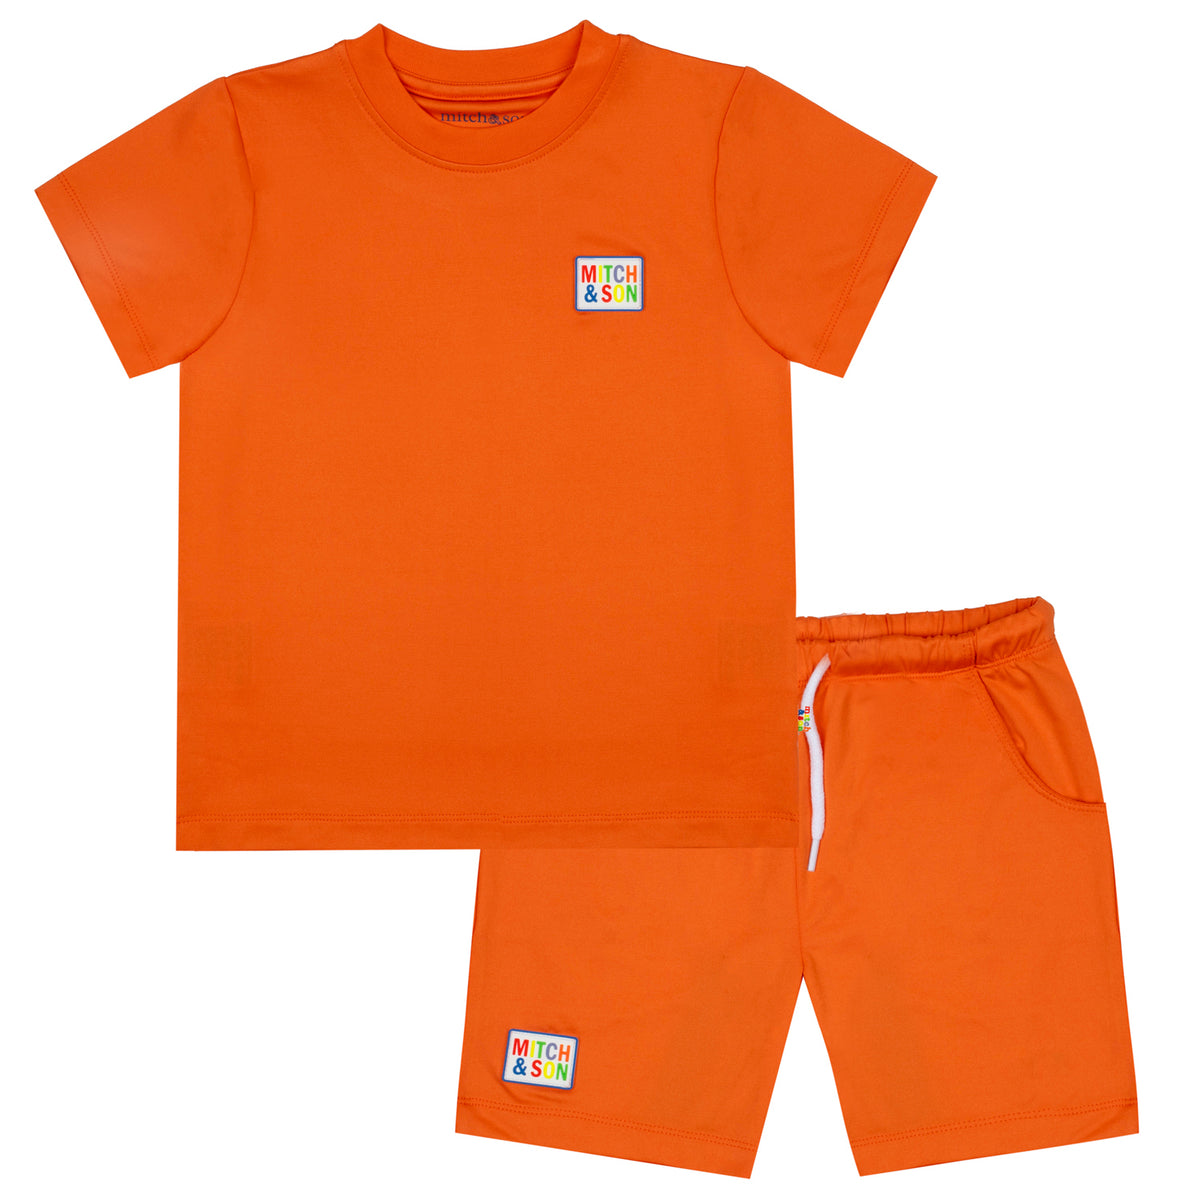 Mitch & Son Boys 'Vasco' Orange Poly Shorts Set